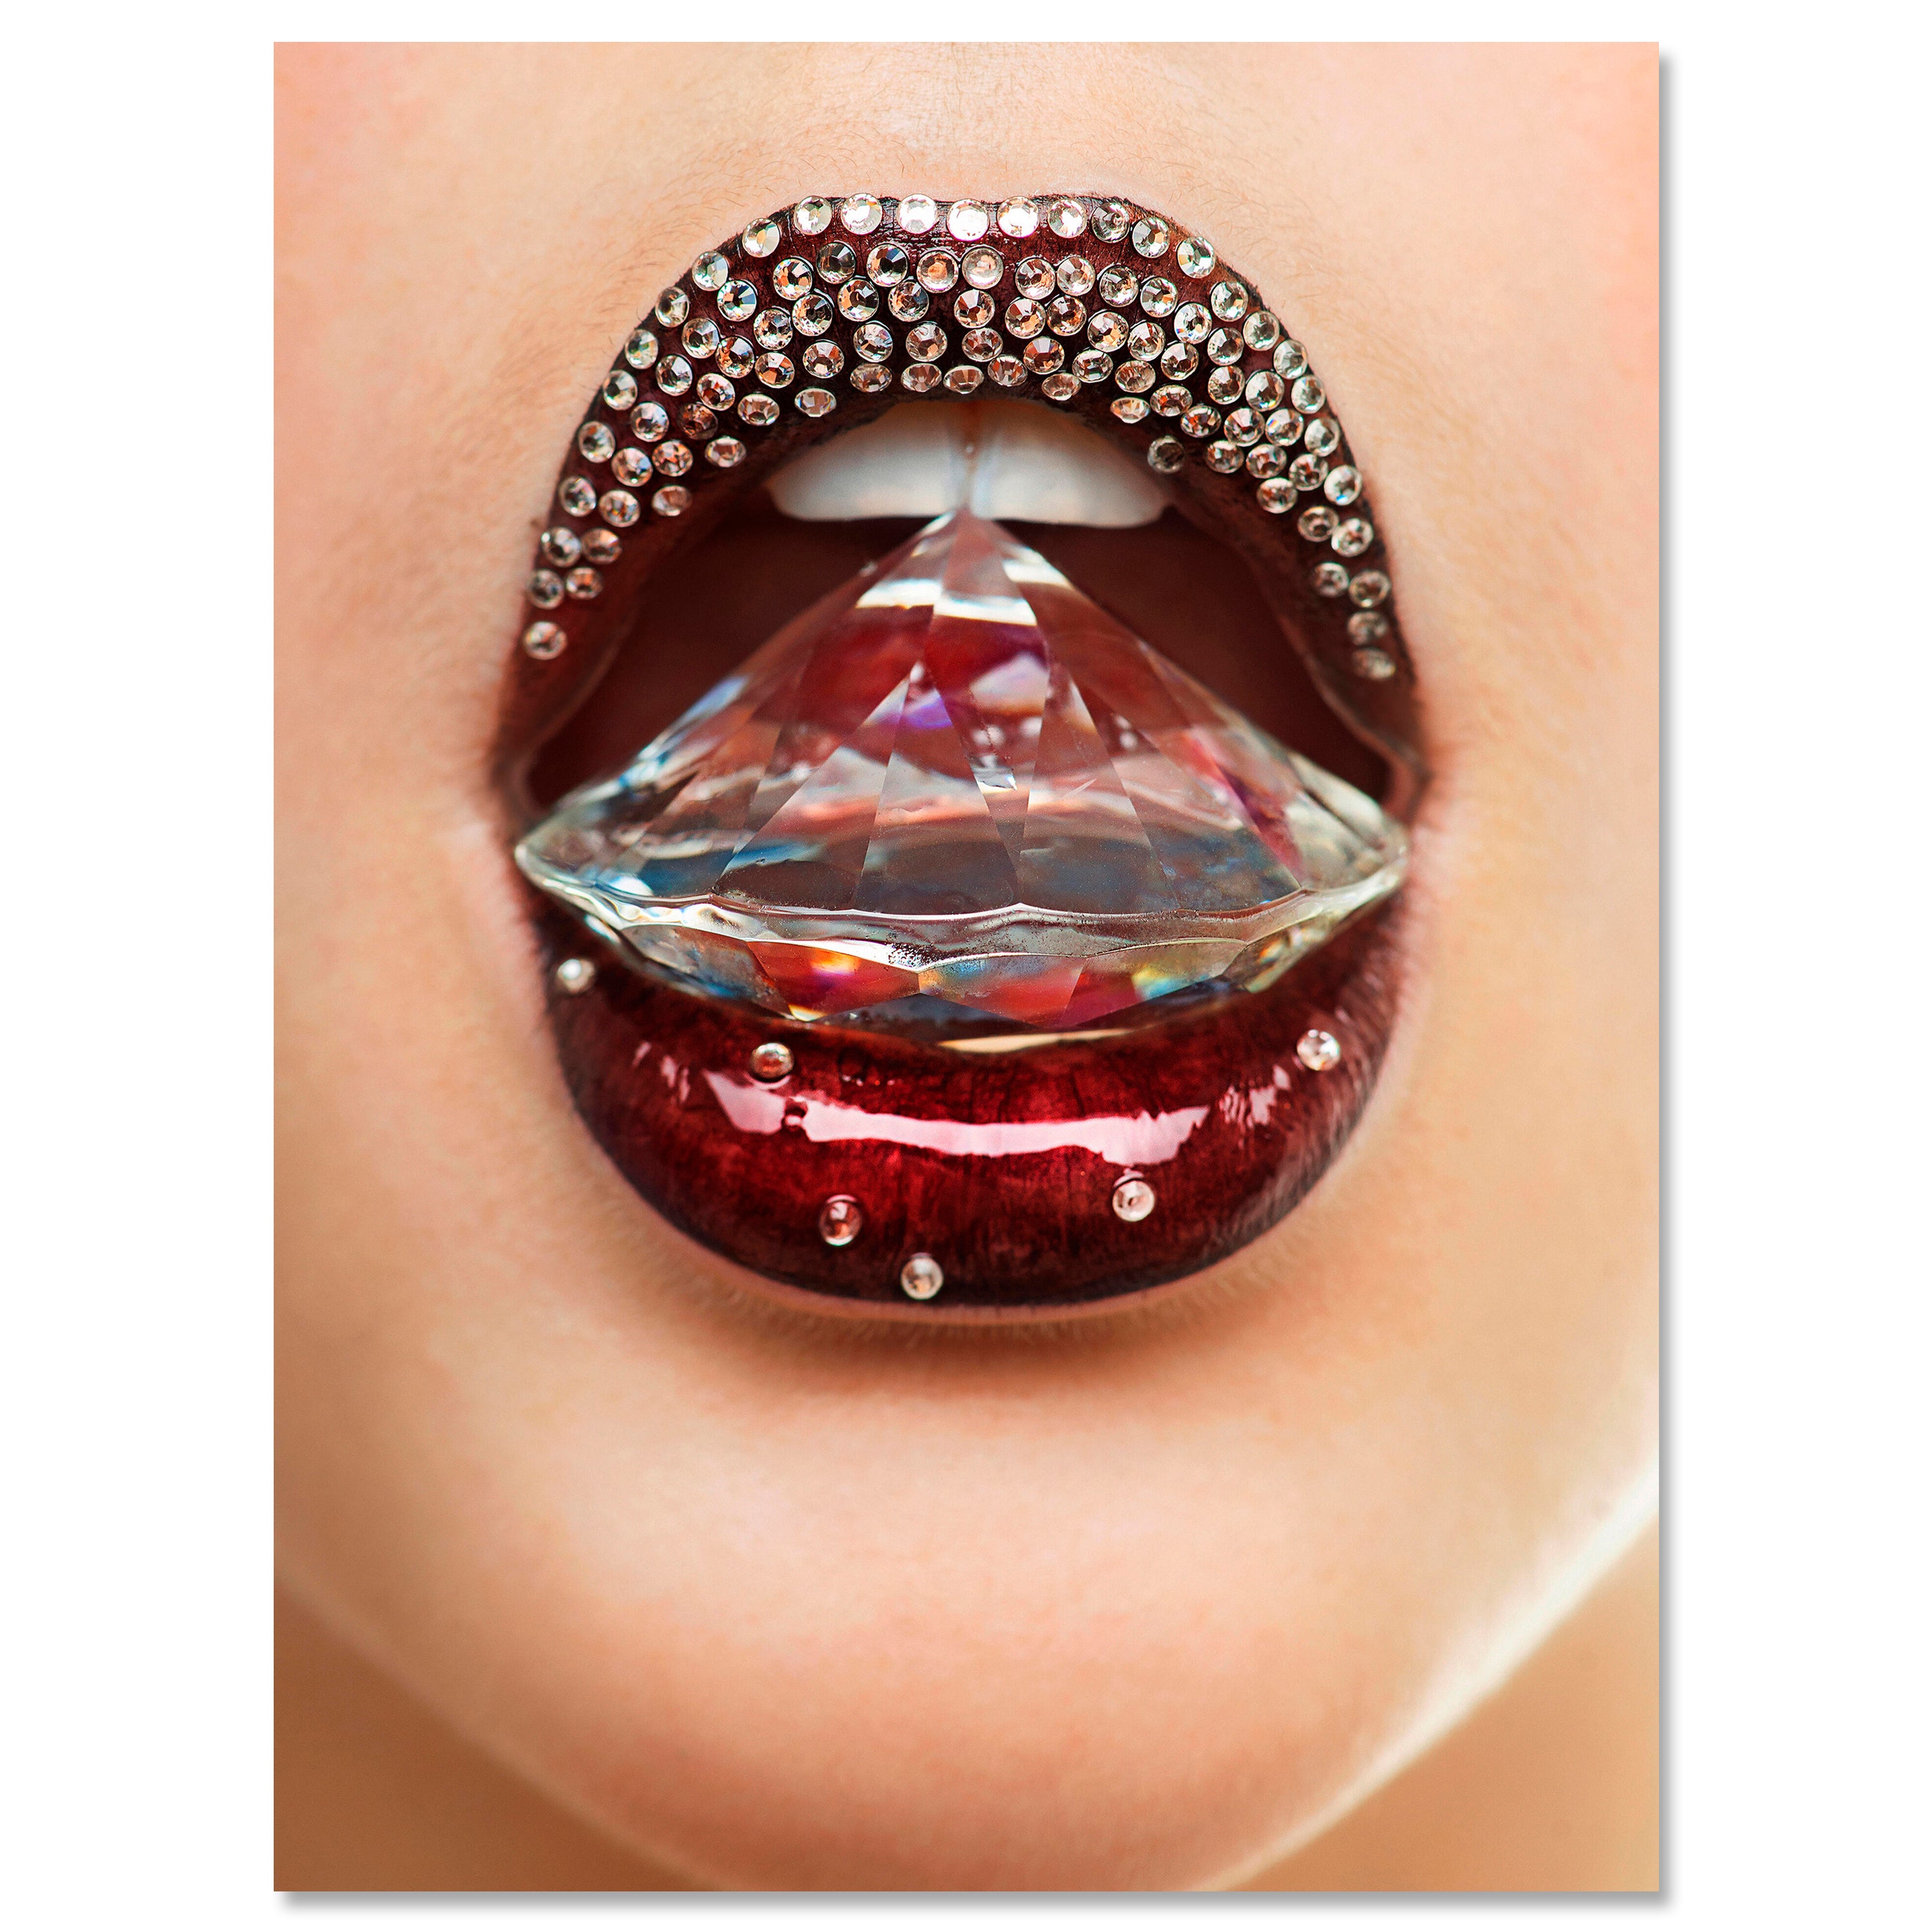 Leinwandbild Frauen Lippen M0079 kaufen - Bild 1